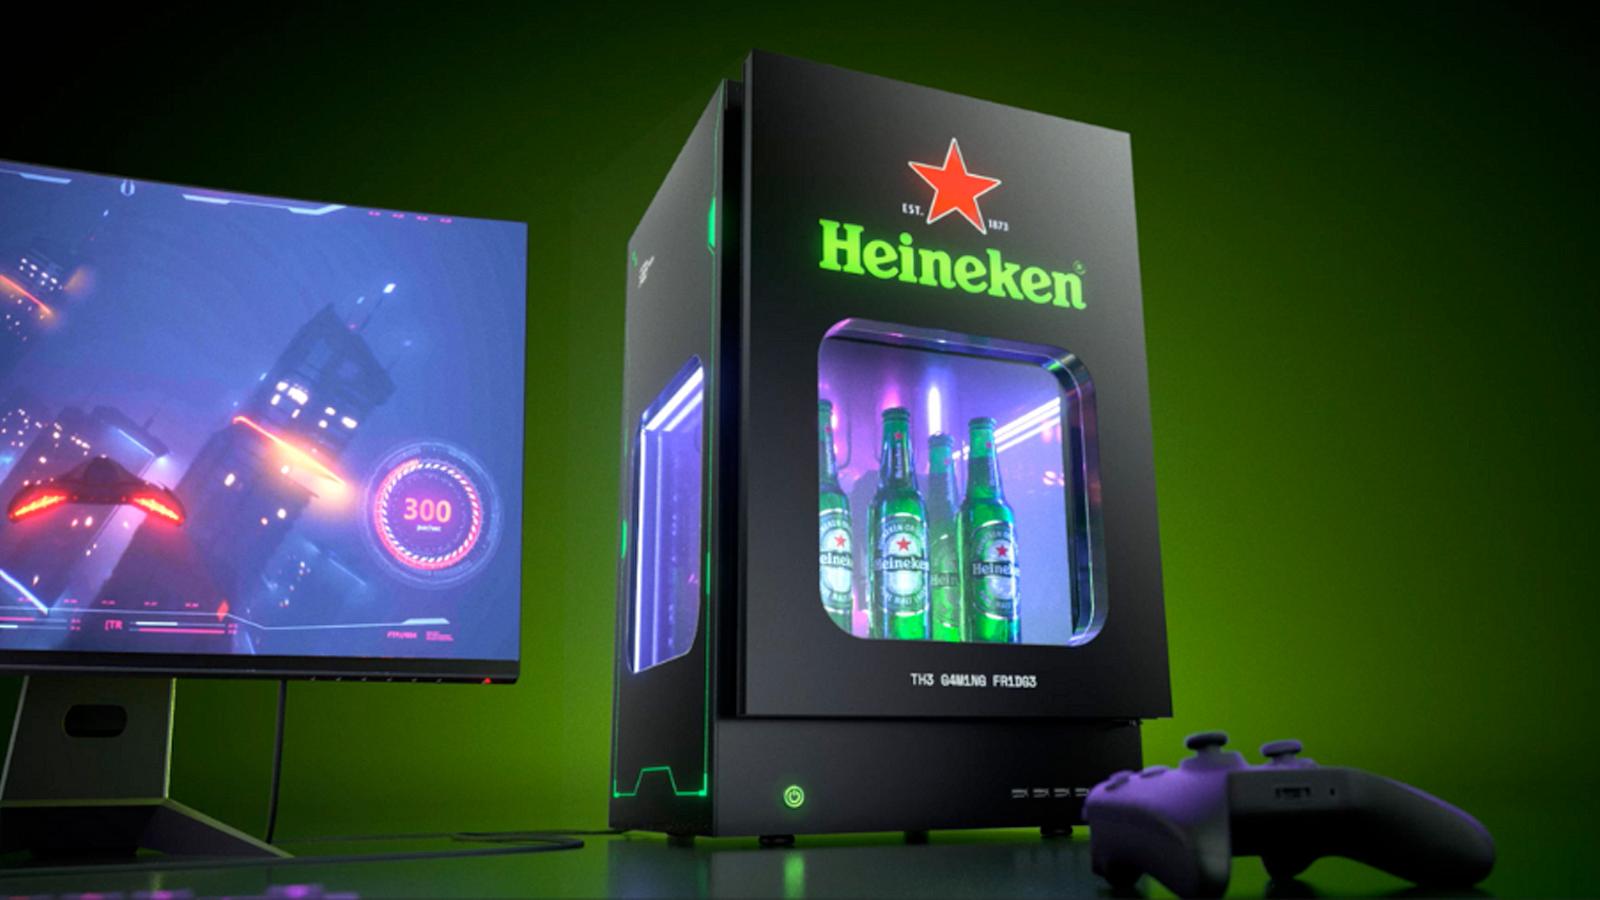 Heineken’s beer cooling PC build is the right kind of crazy - Dexerto